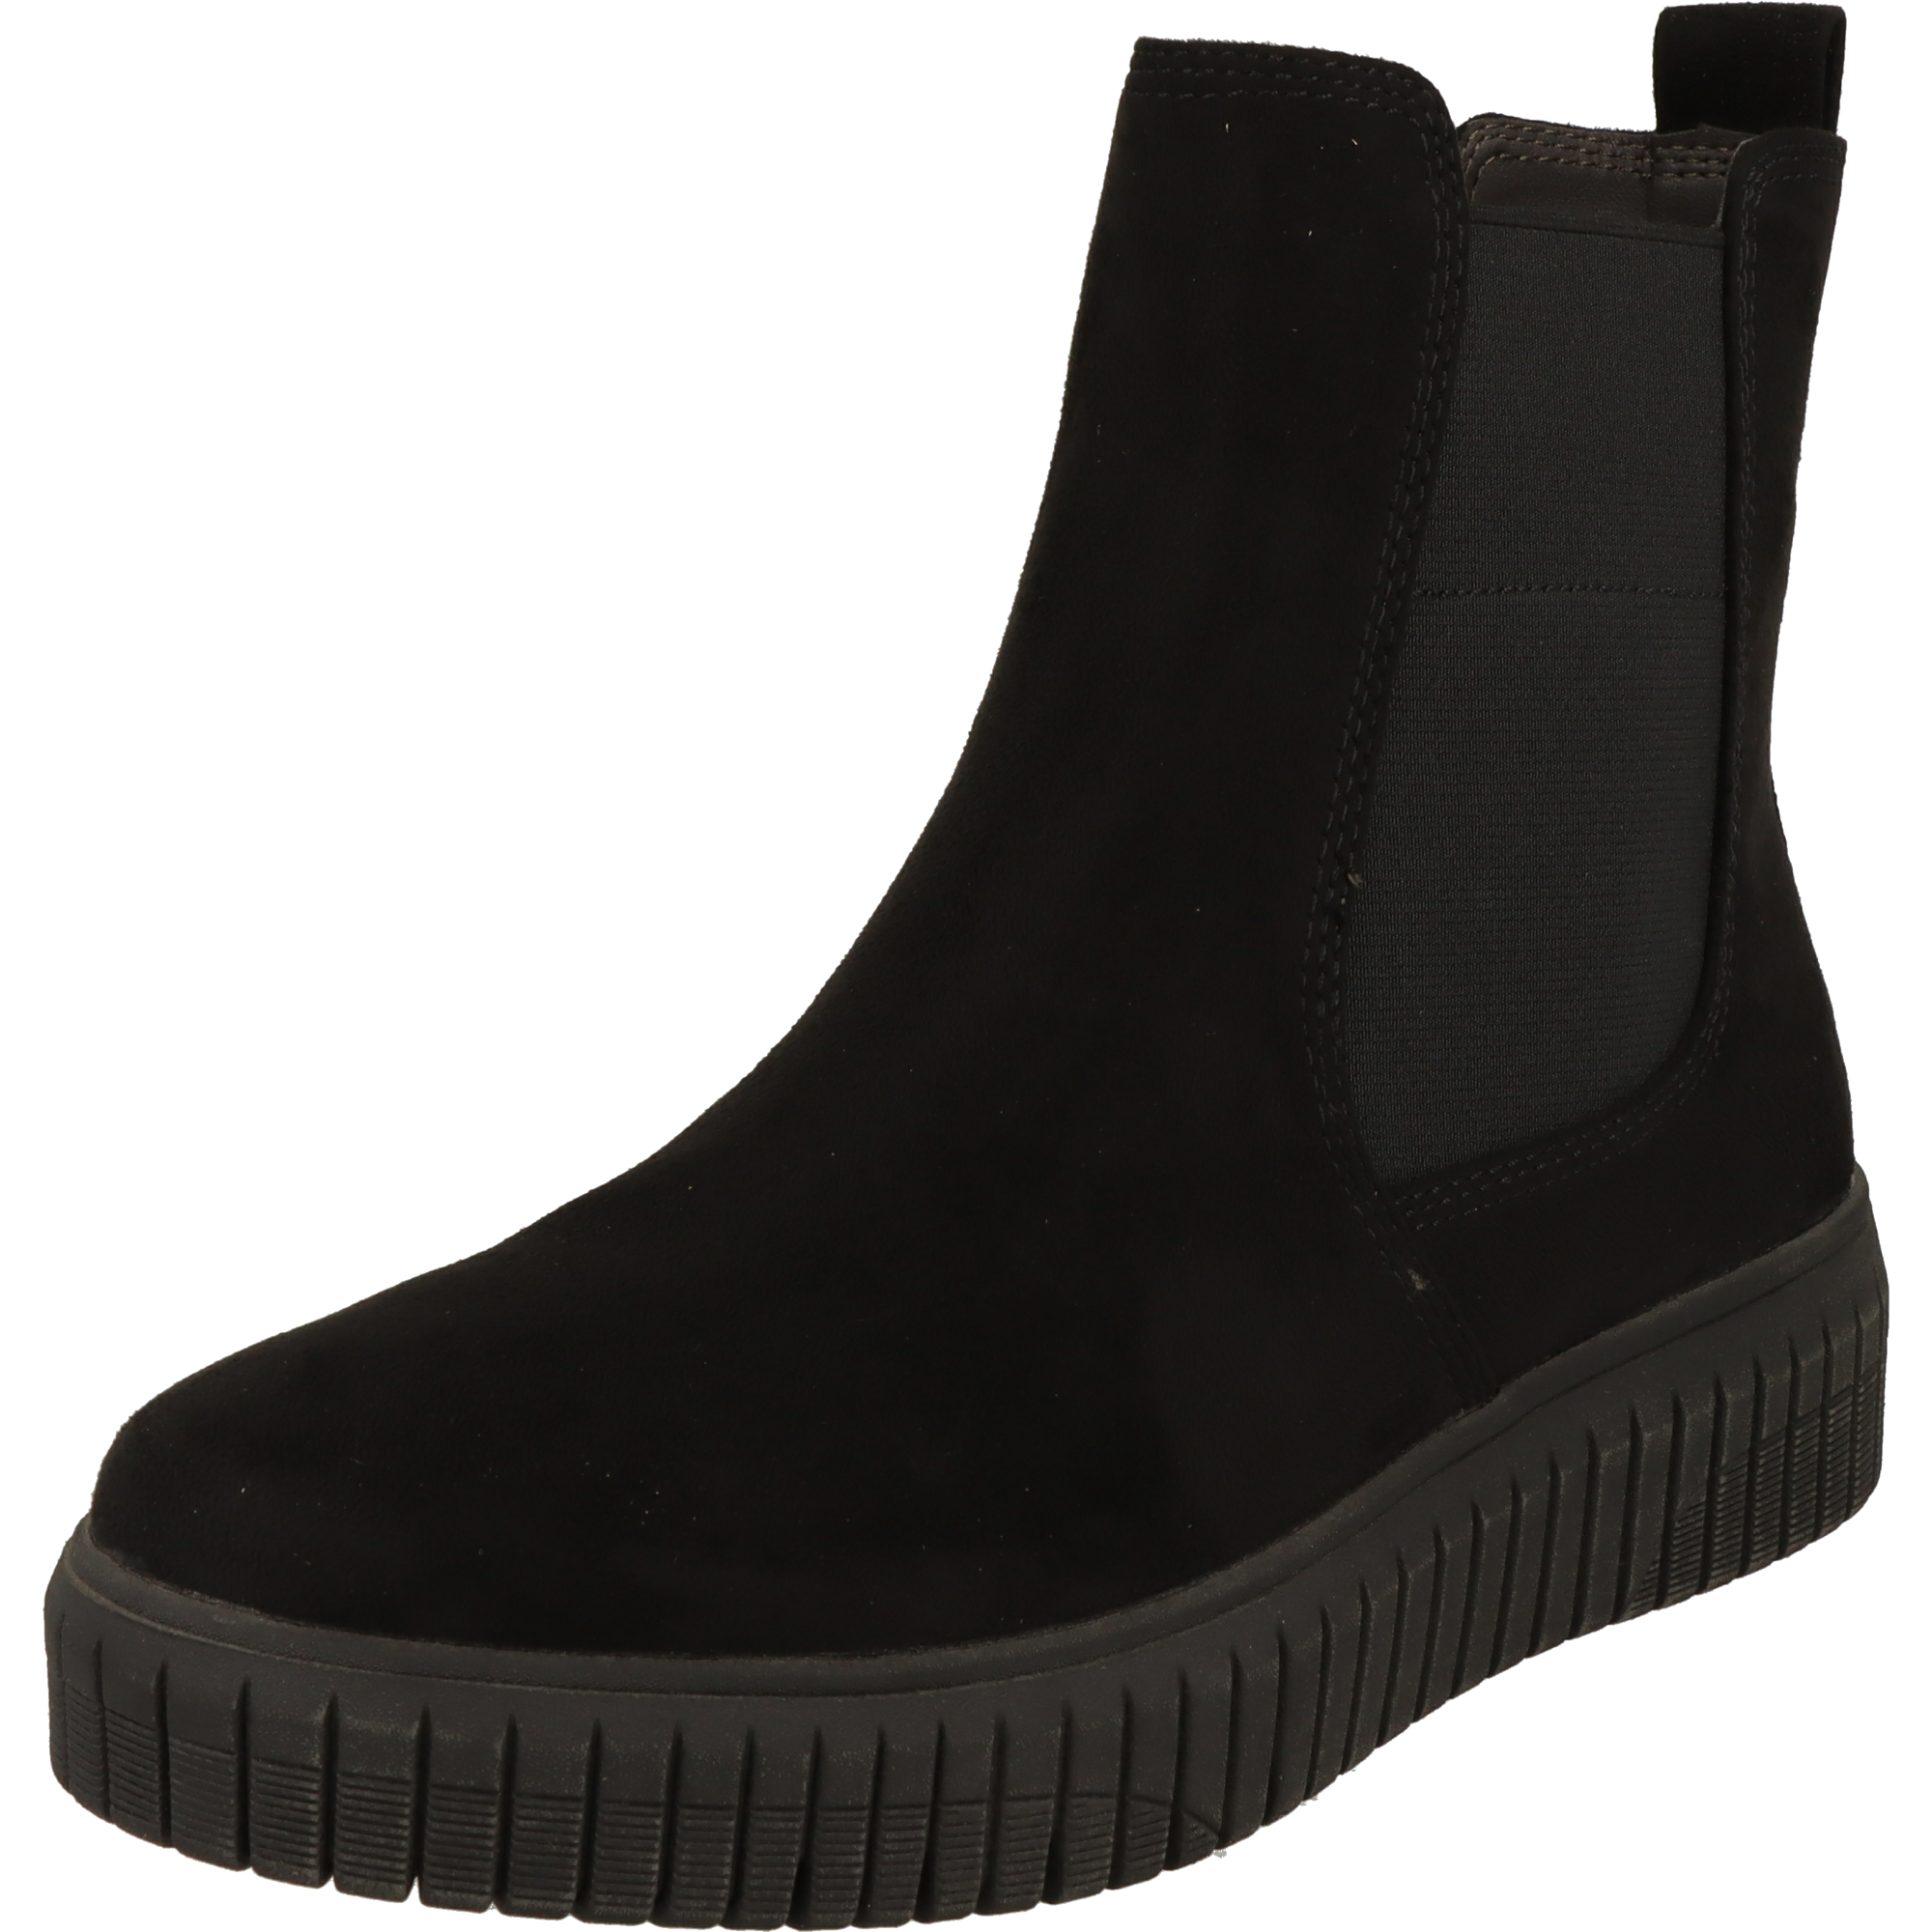 Jana Damen Schuhe H-Weite modische Chelsea Boots Stiefel 8-25461-41 Black